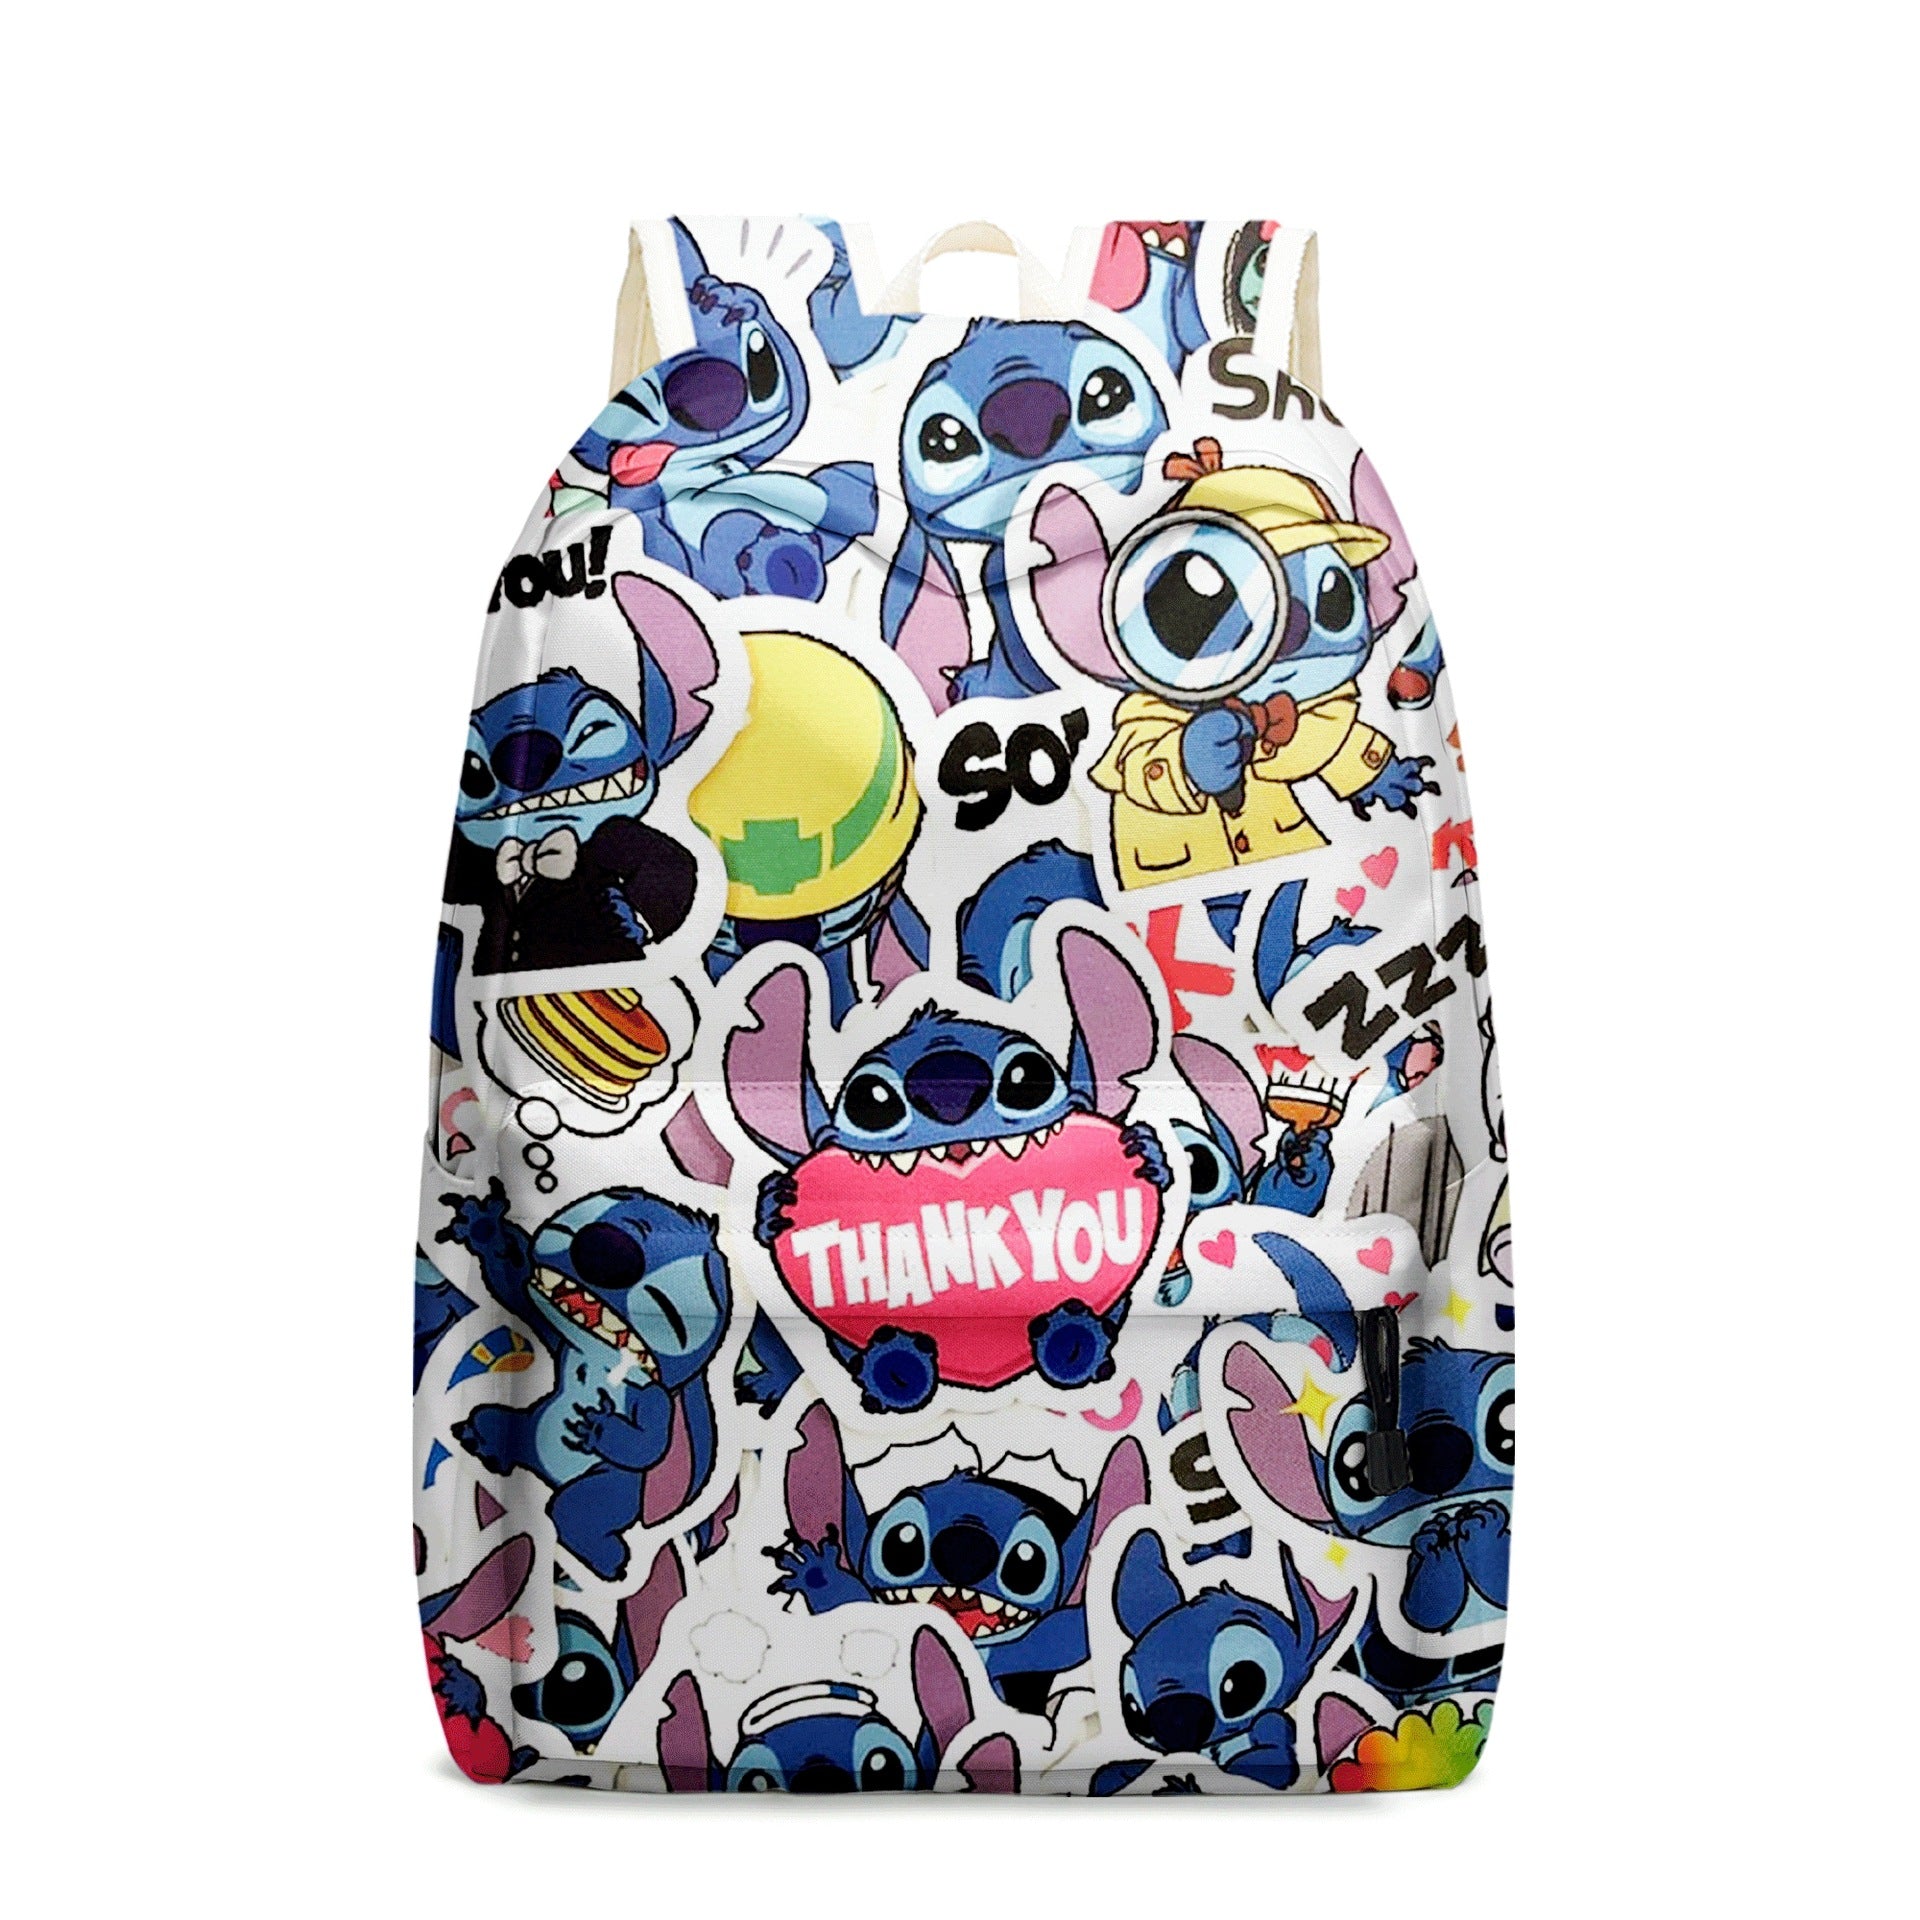 Kid School Bag Pupilshe New Stitchboy Backpack